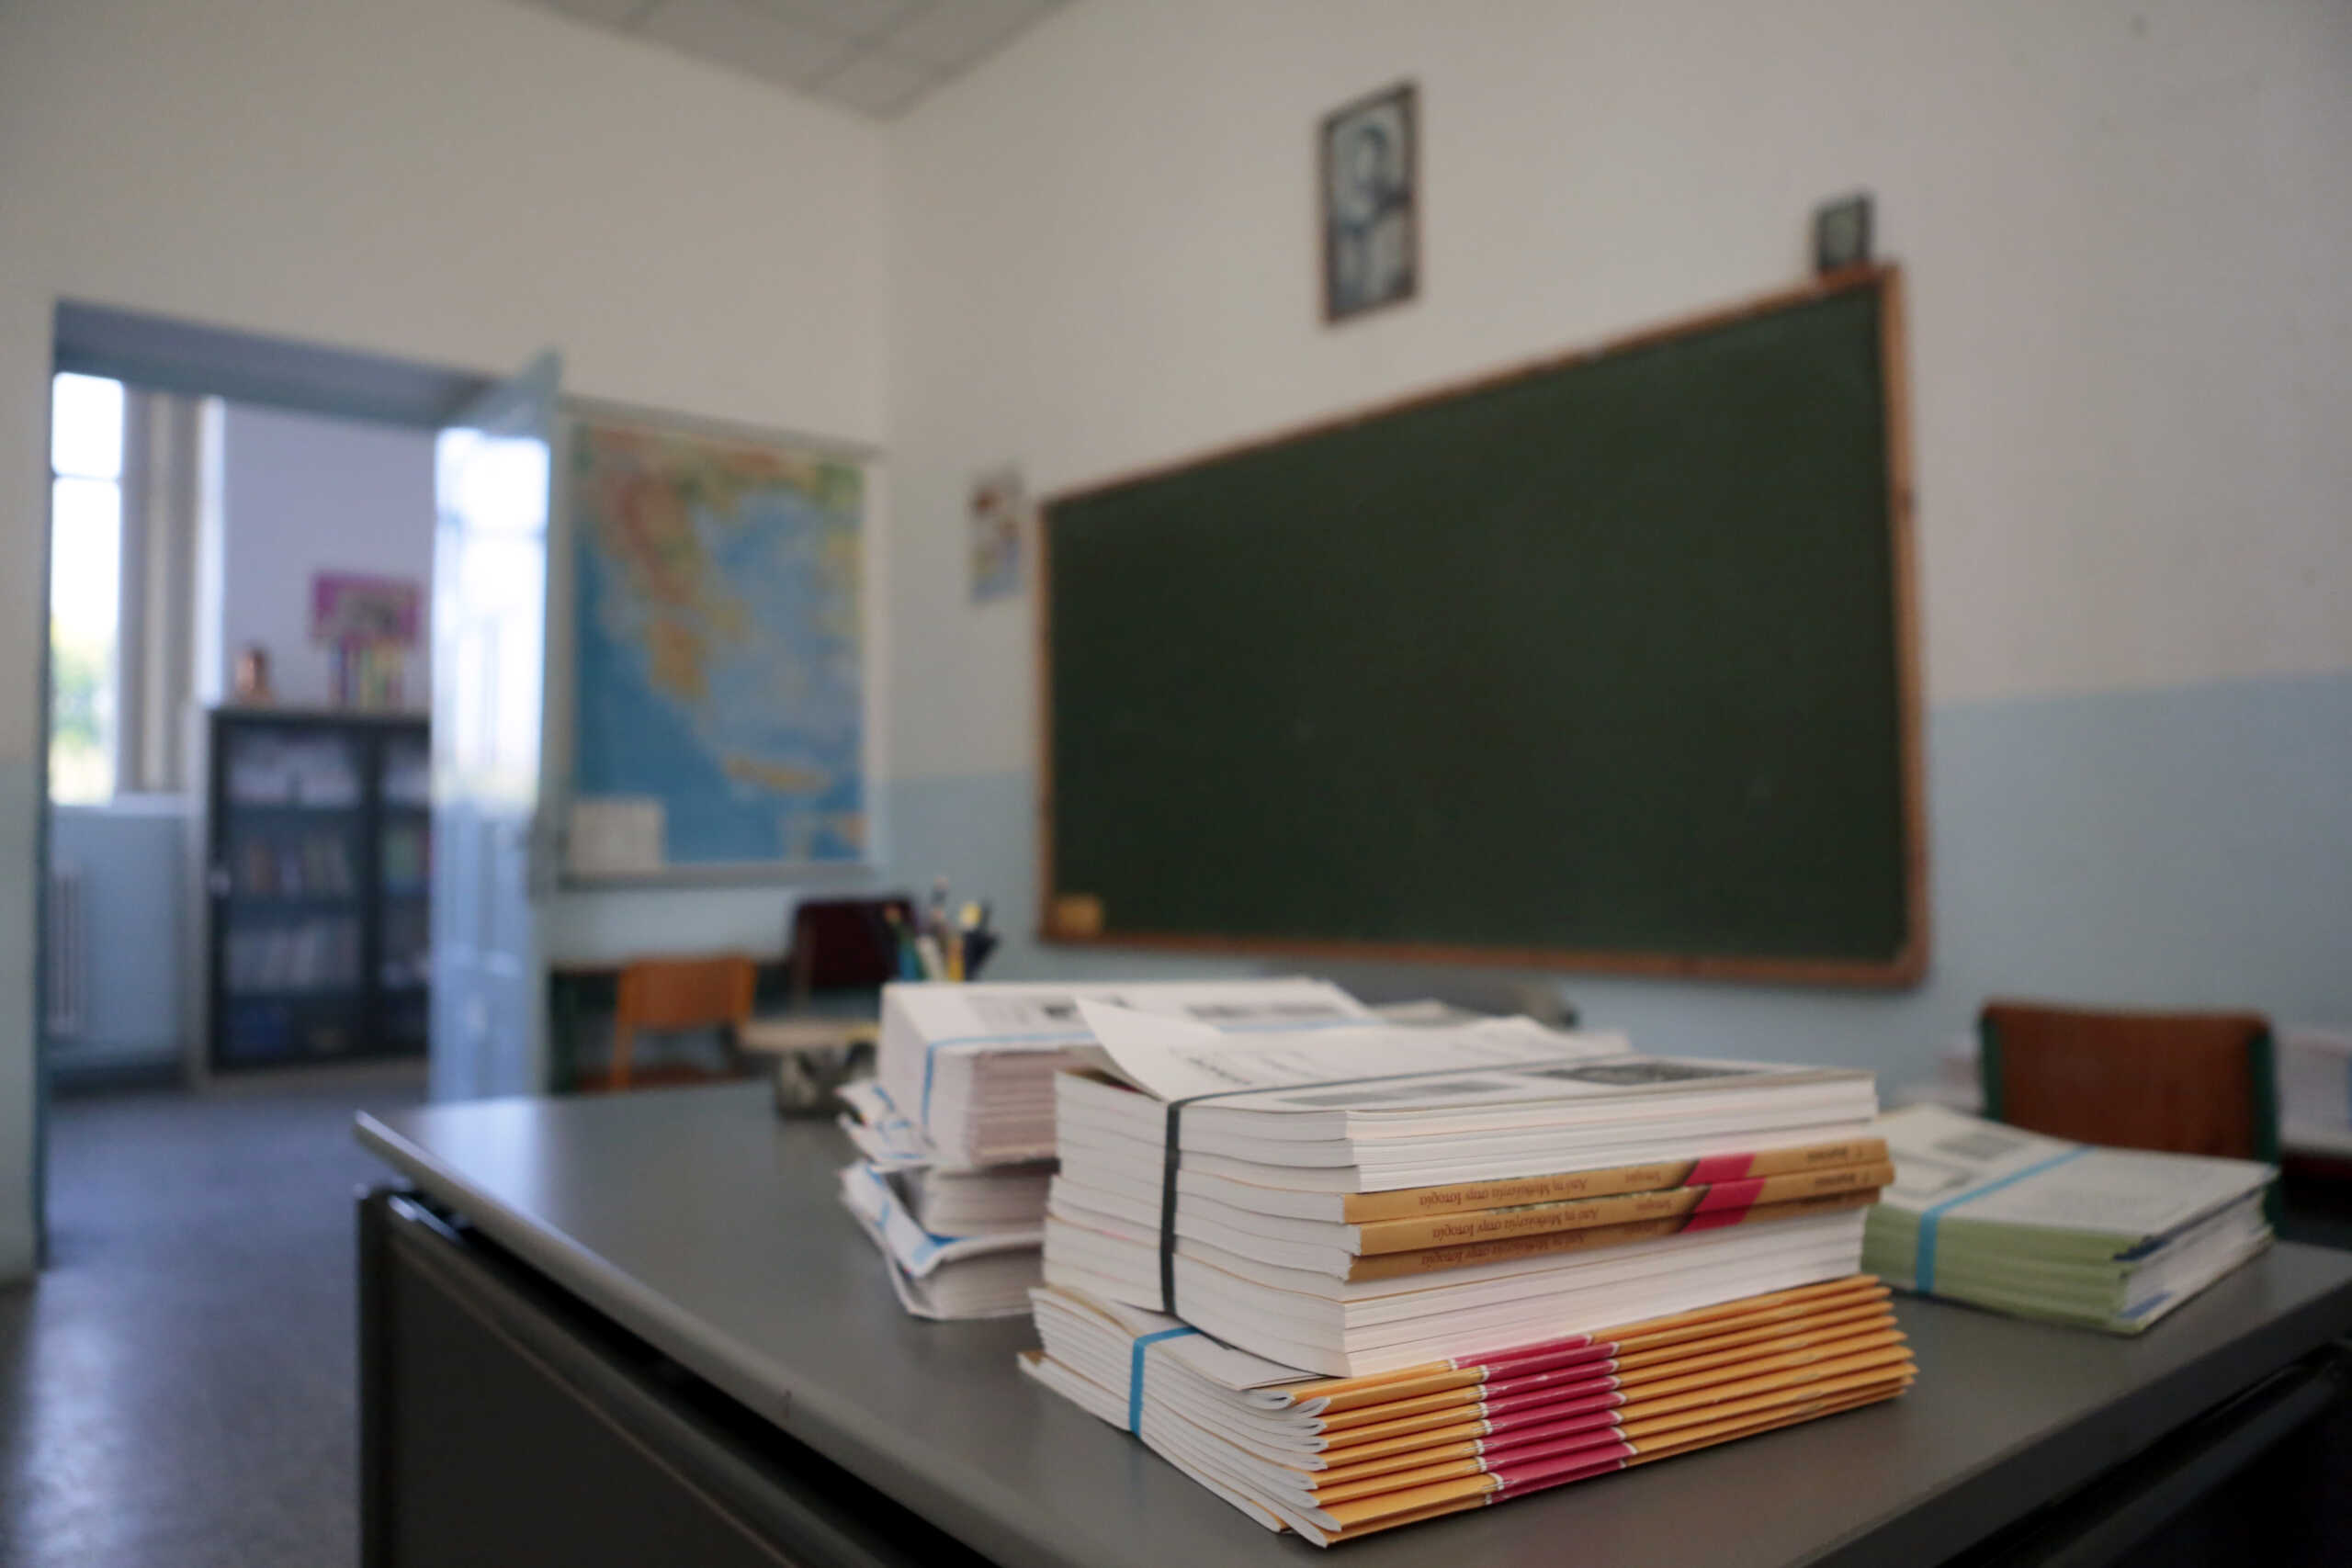 Μεταθέσεις εκπαιδευτικών: Όλα τα ονόματα σε Πρωτοβάθμια και Δευτεροβάθμια Εκπαίδευση που ανακοίνωσε το υπουργείο Παιδείας